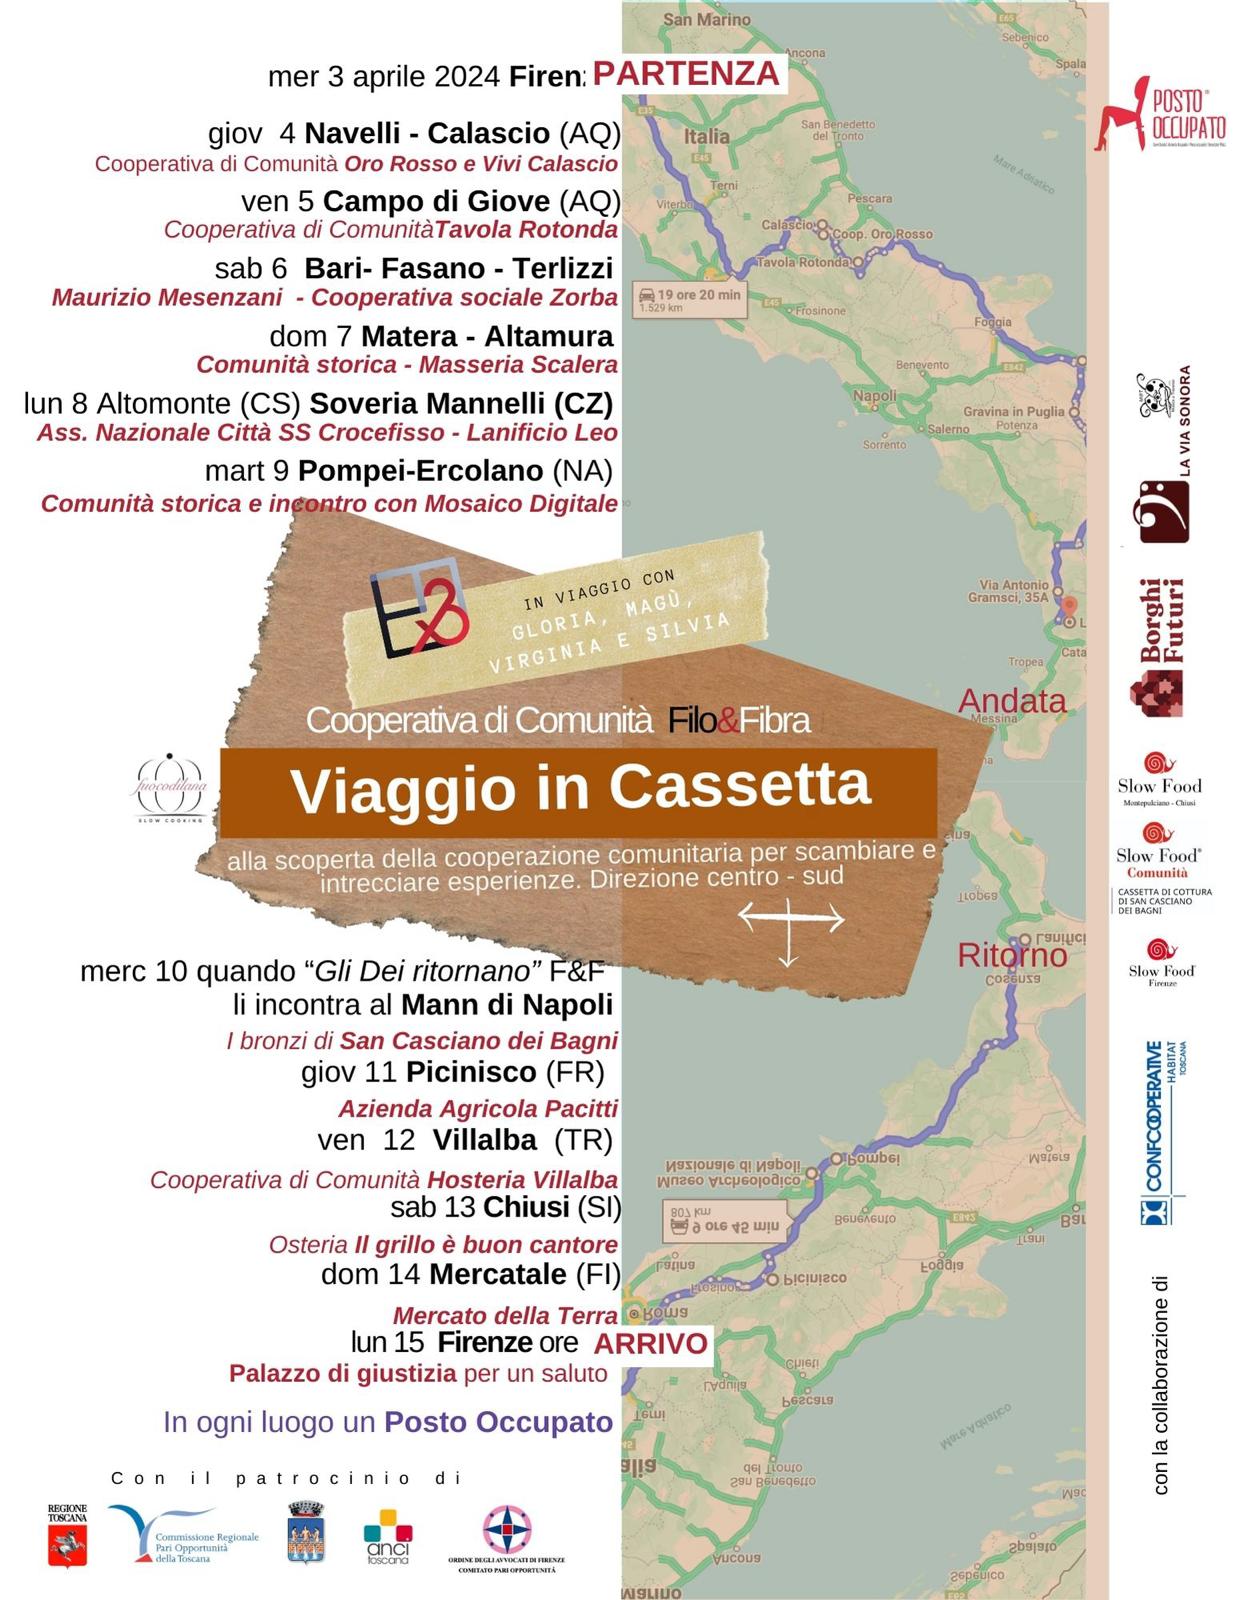 Viaggio in Cassetta - Alla scoperta della cooperazione comunitaria per scambiare e intrecciare esperienze. Direzione centro - sud